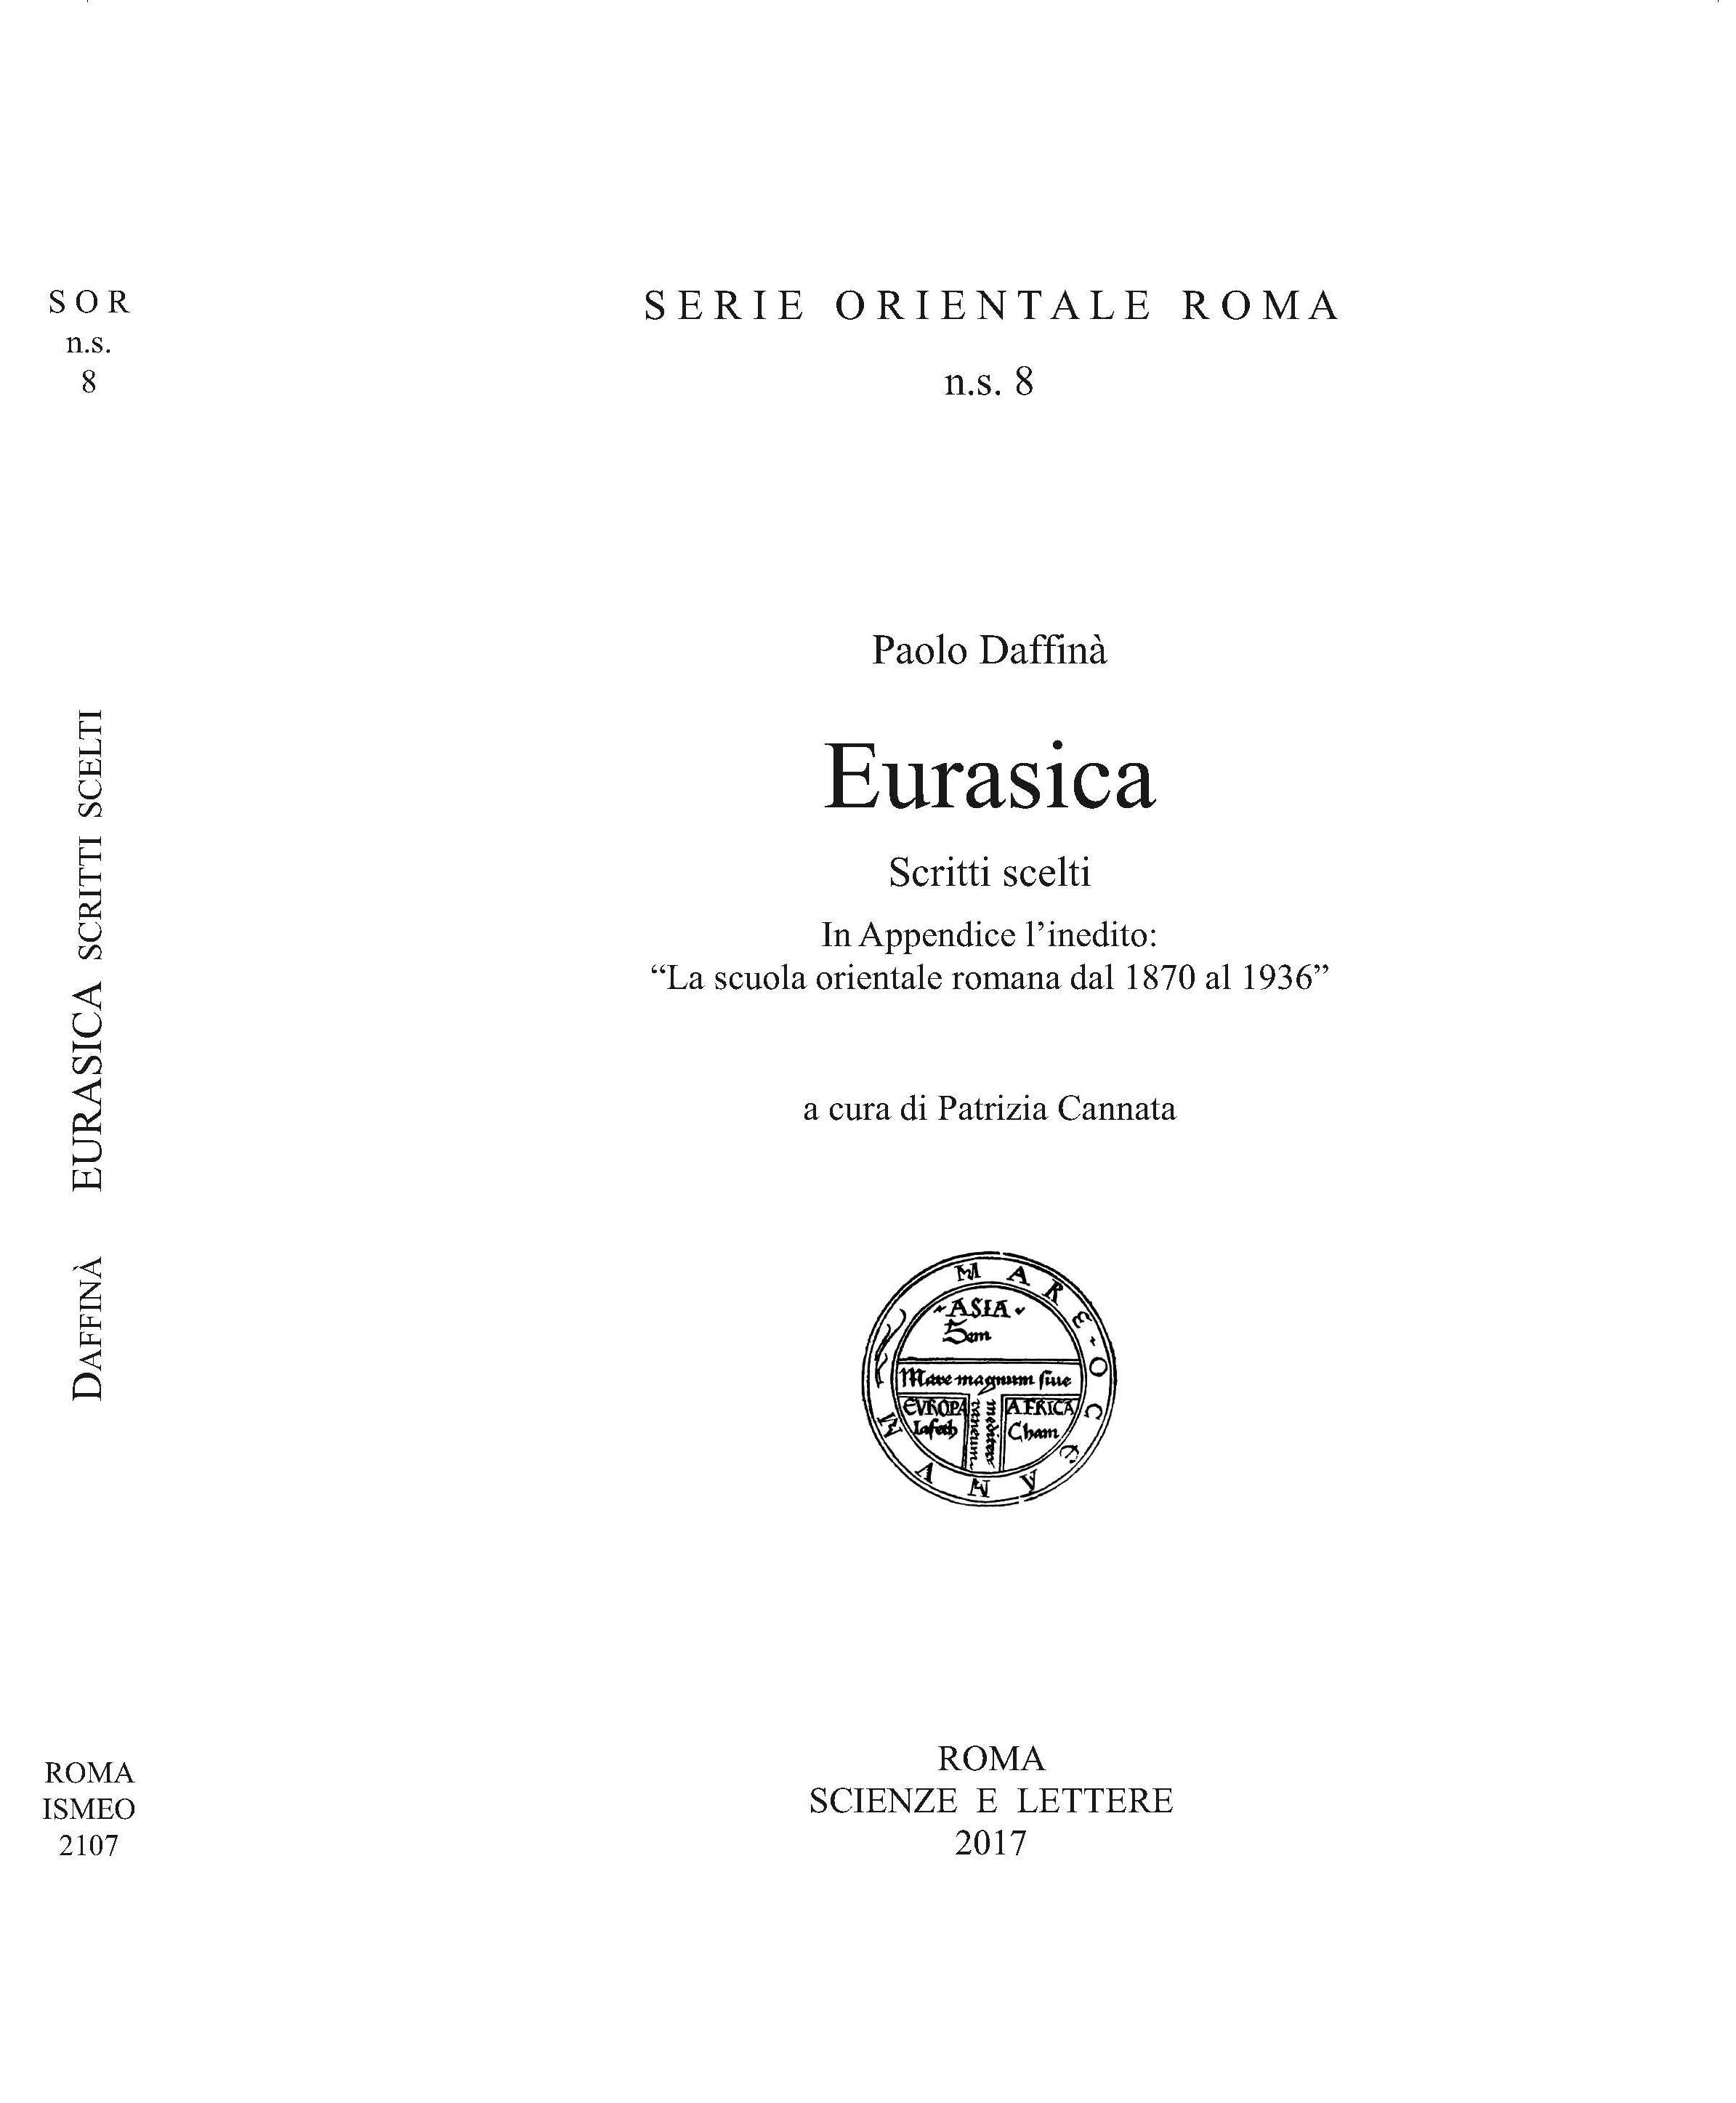 Paolo Daffinà, Eurasica<br/>
Scritti scelti <br/> 
In Appendice l'inedito: 